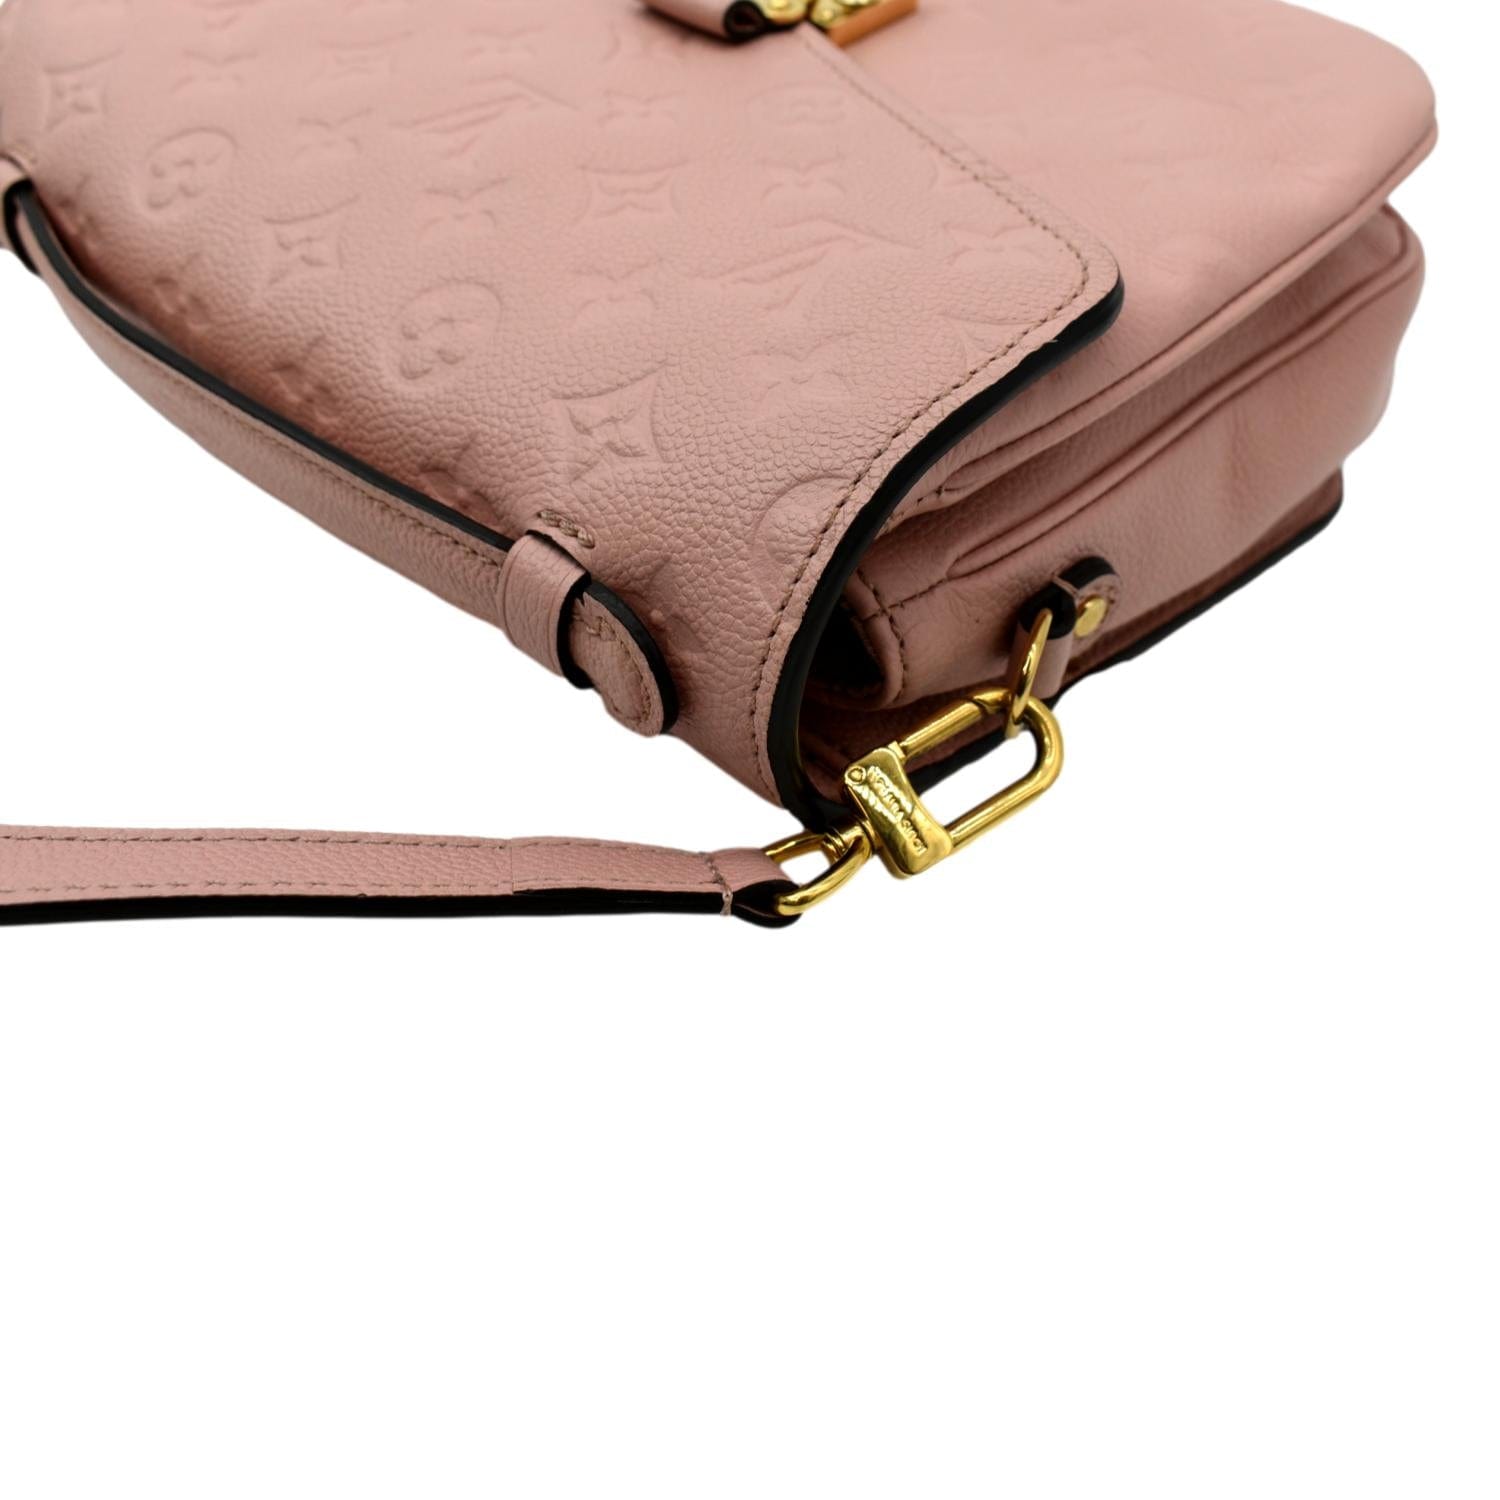 Mirror Pochette Bag in Beige Leather